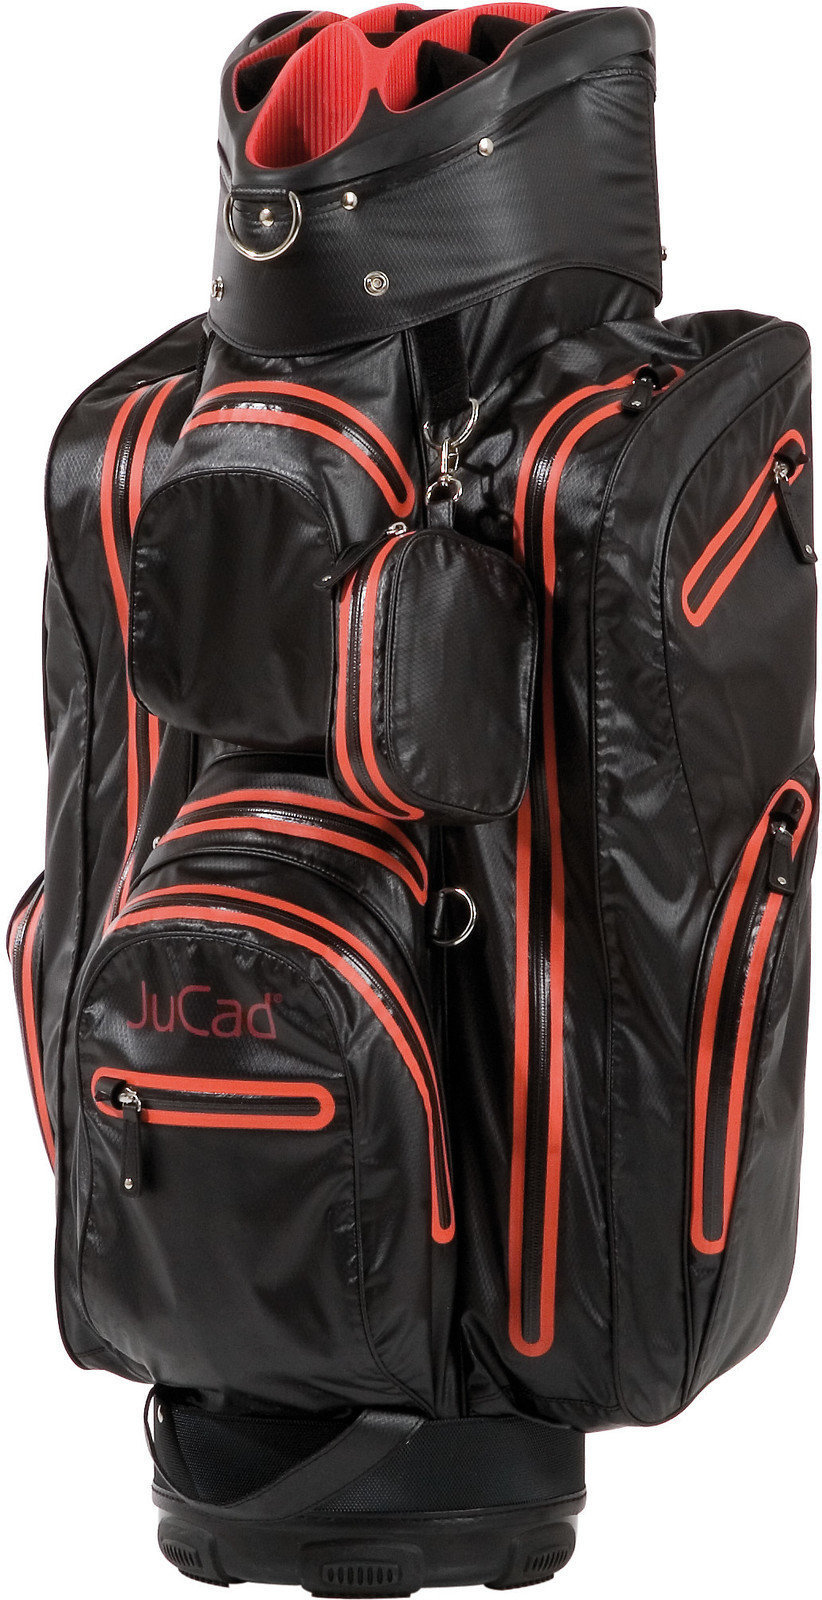 Jucad Aquastop Cart Bag Jucad